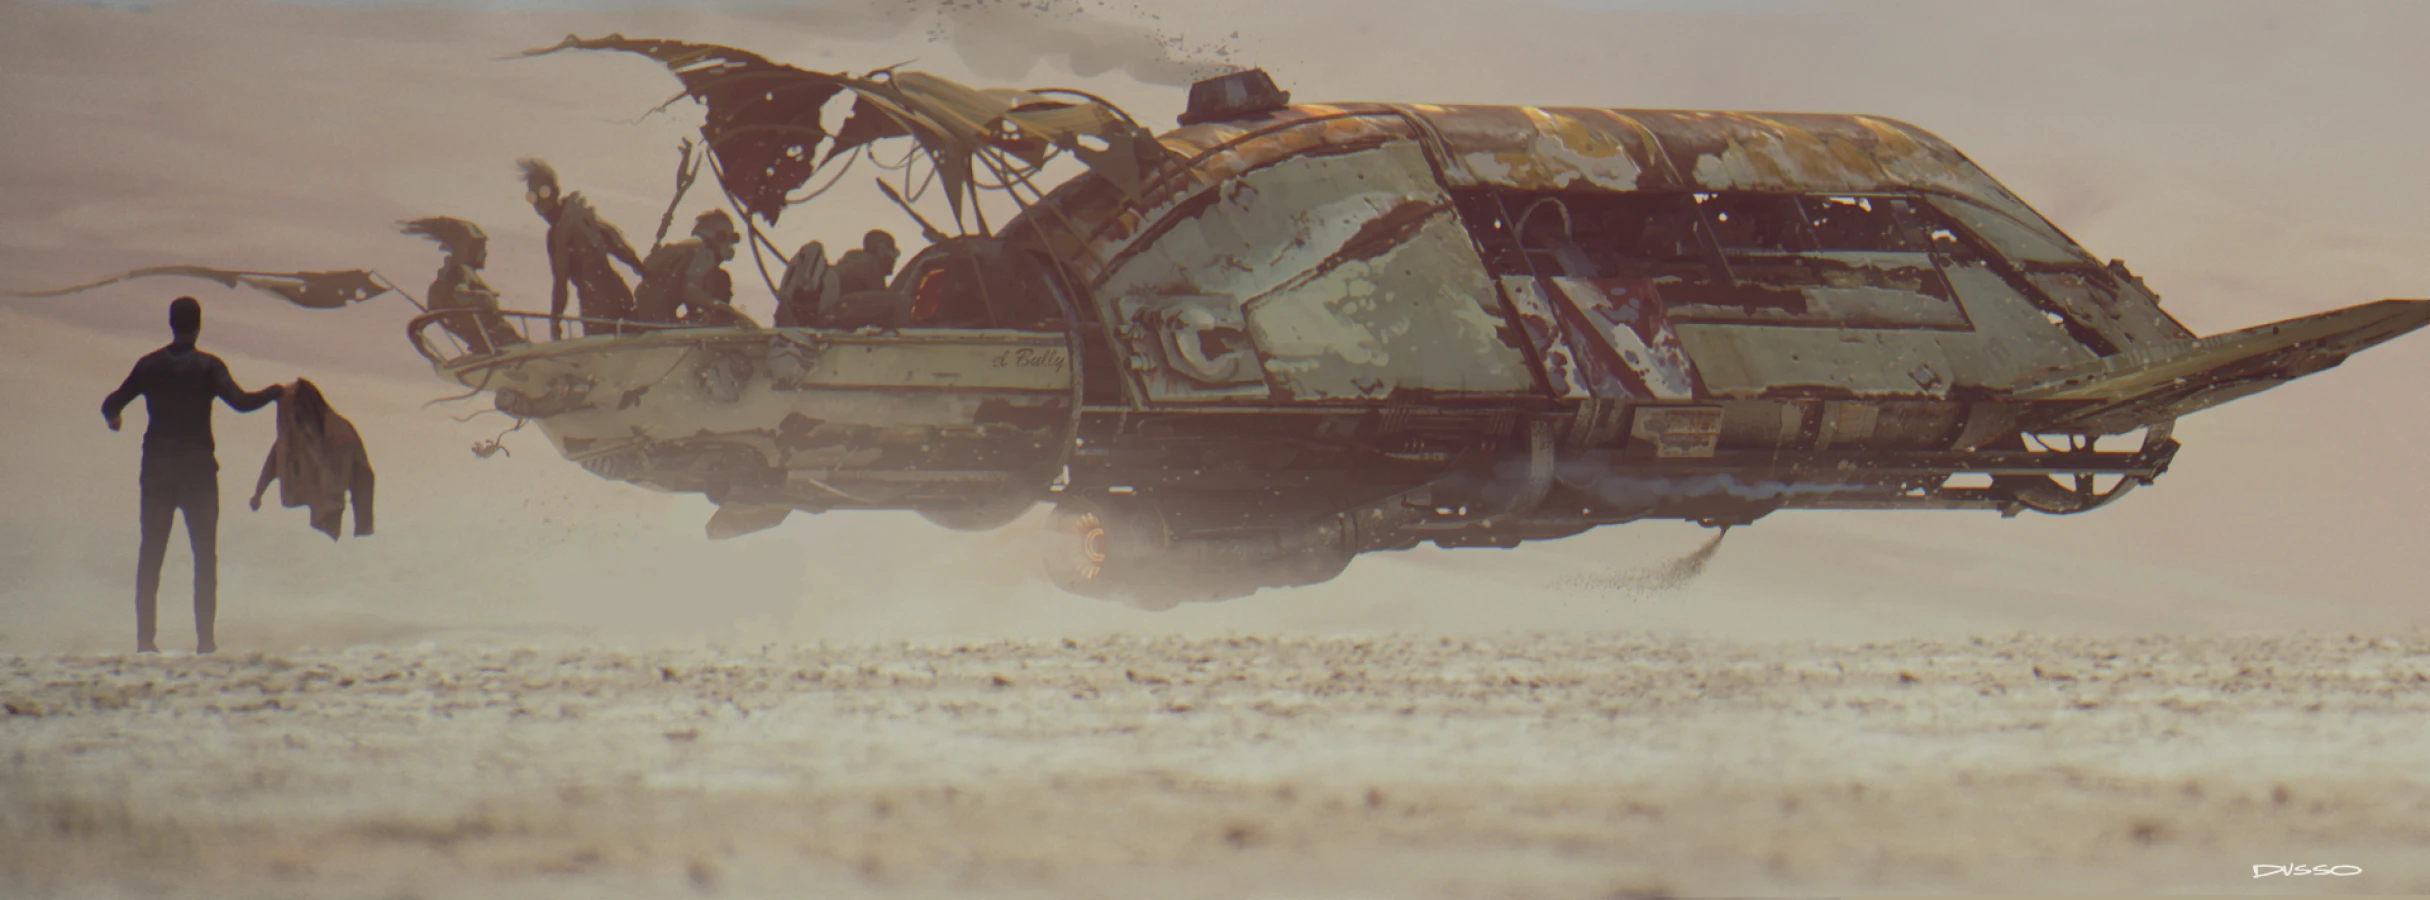  Dusso's concept art : spaceship in desert Star Wars 